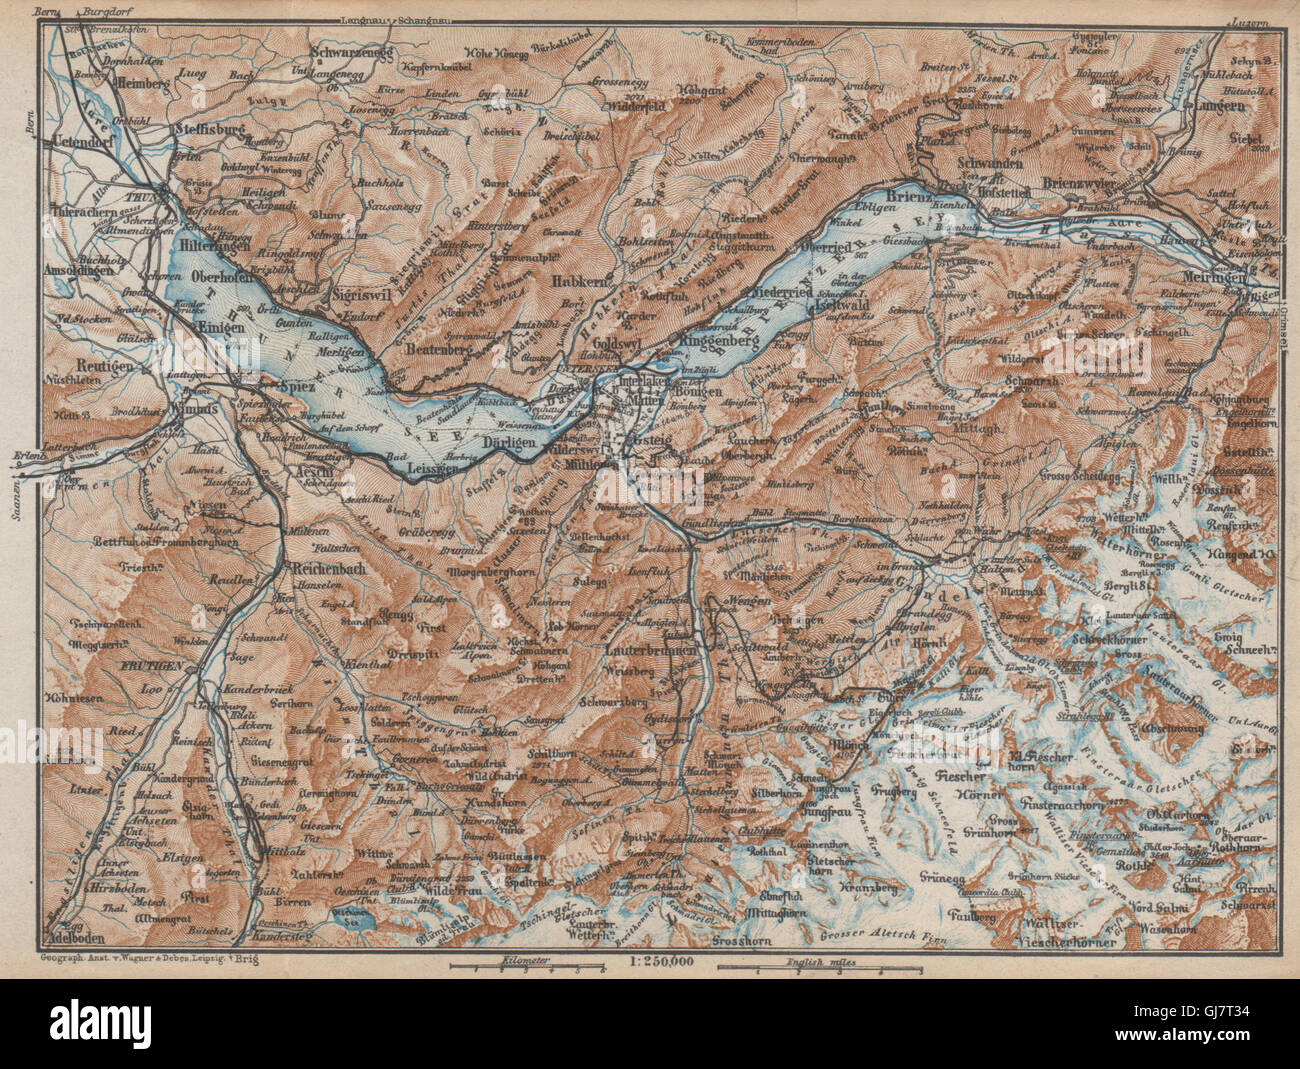 BERNESE OBERLAND. Wengen Mürren Grundelwald Reutigen Interlaken Eiger, 1938 map Stock Photo